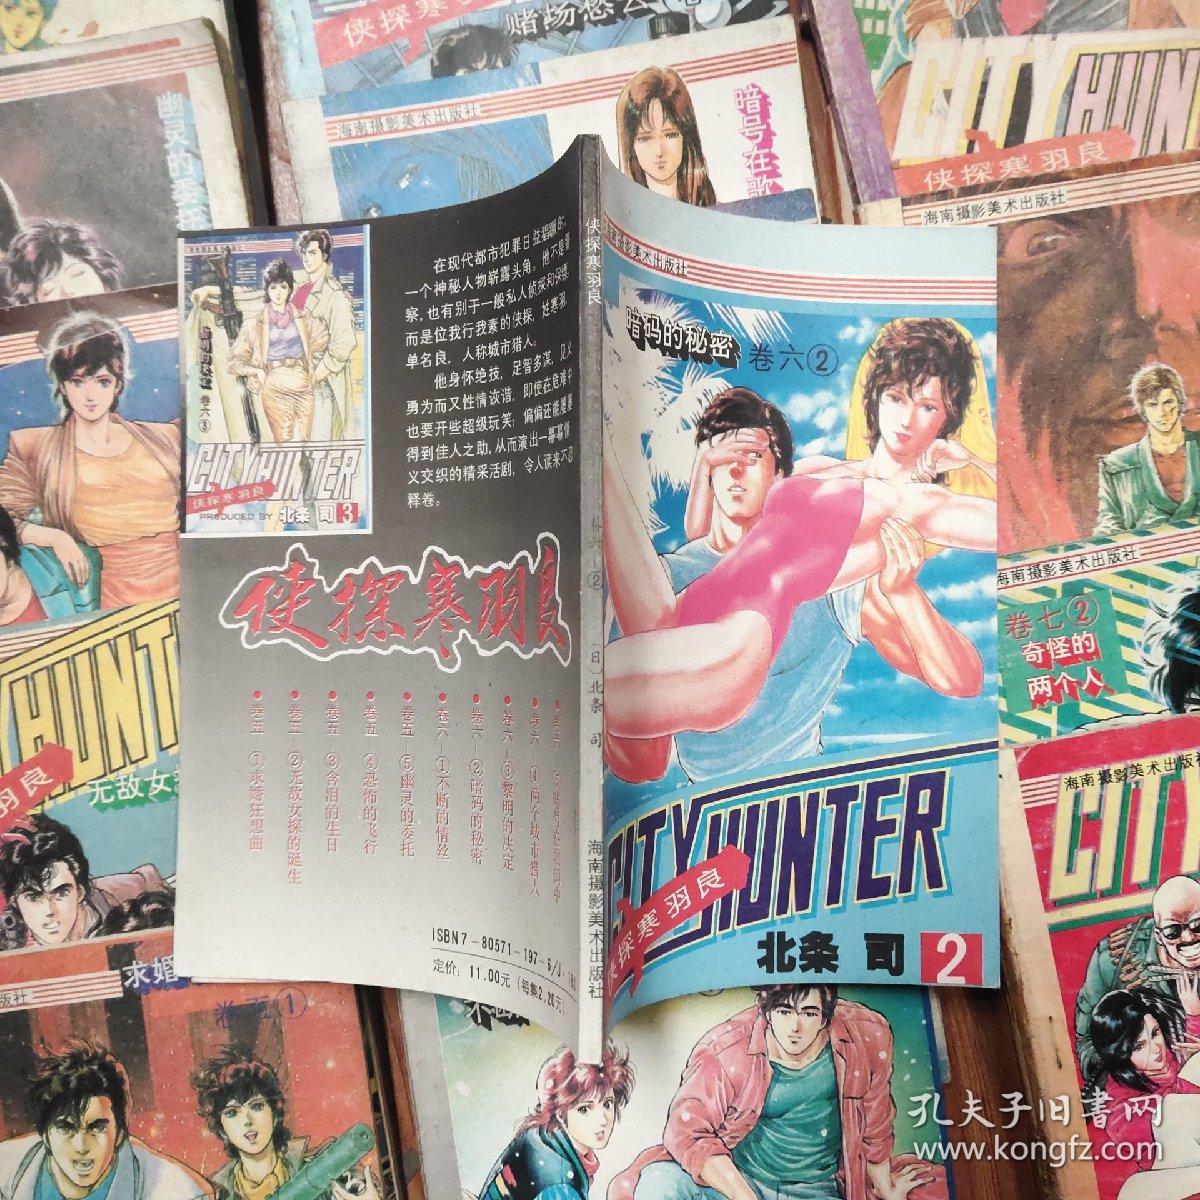 （日本）北条司 动漫作品集，共53本。包含《侠探寒羽良》和《猫眼三姐妹》两个系列的作品，详见详细描述。原有49本后加卷十第5集，卷九第4.5集，卷七第5集现在一共53本增加的在90-1外左3中